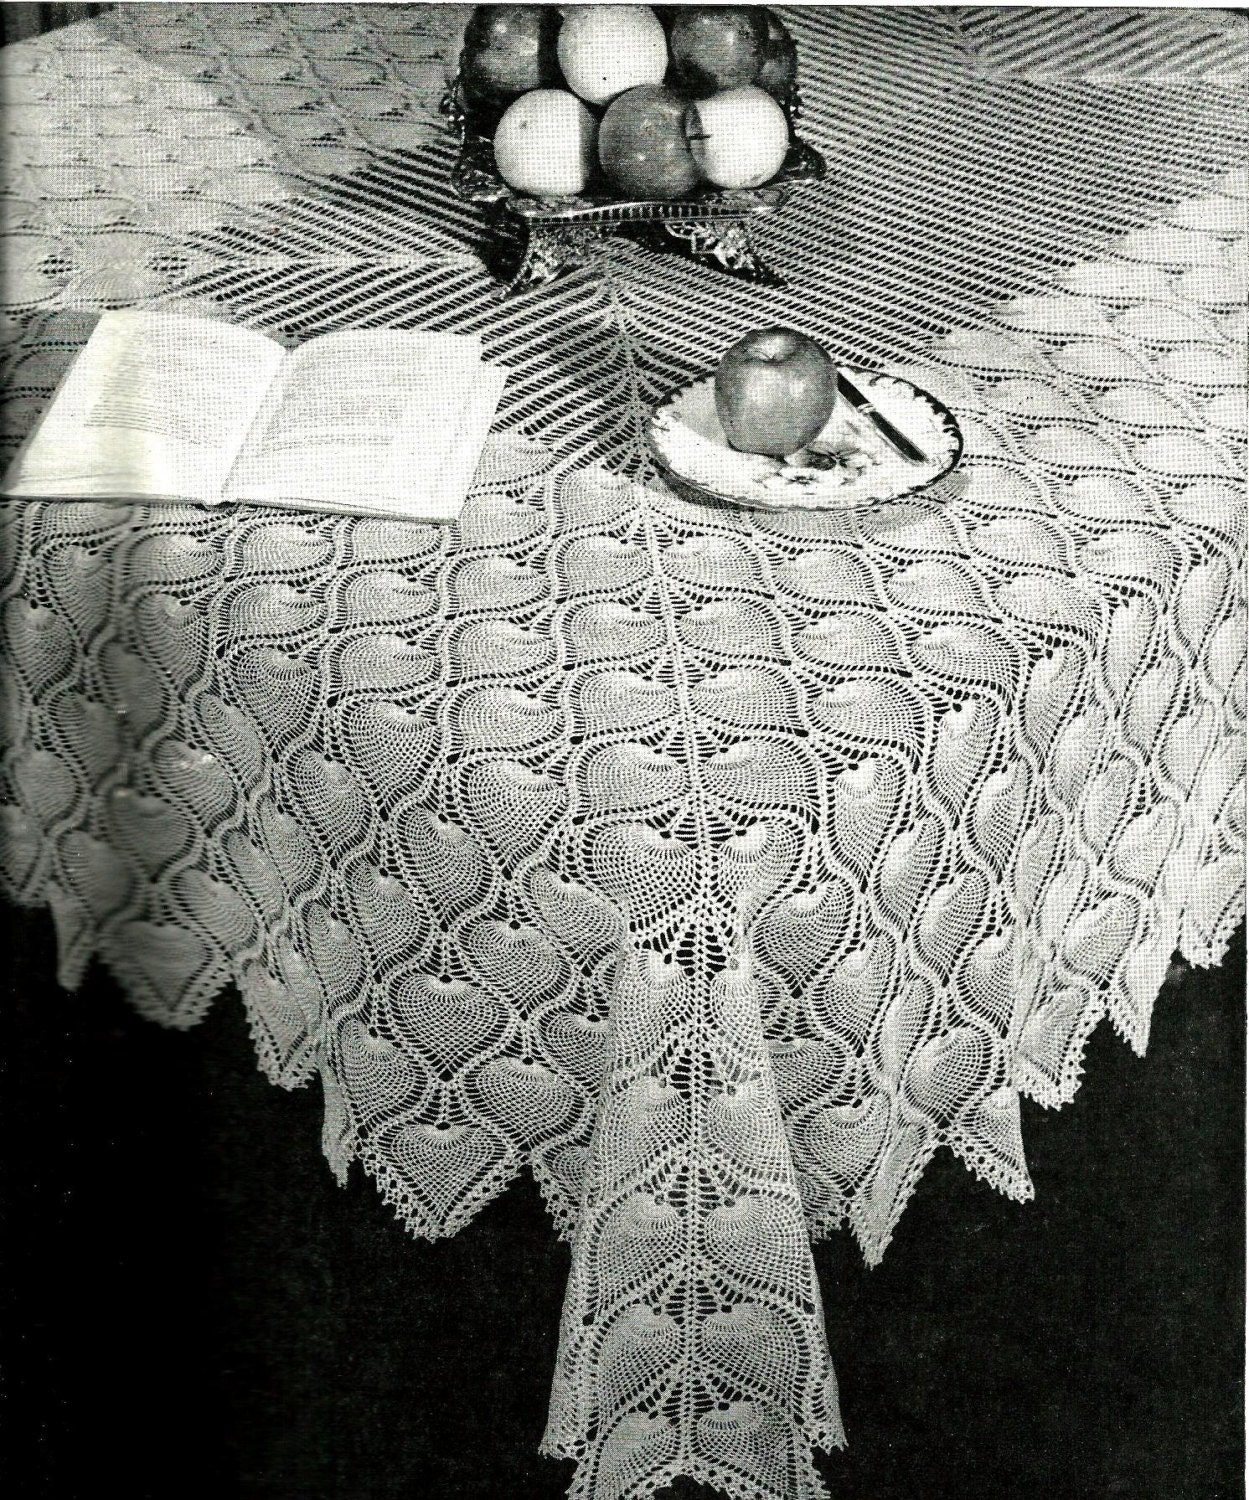 Crocheted Table Cloth, Handmade White Chunky Yarn Tablecloth 18403 – The  Vintage Teacup